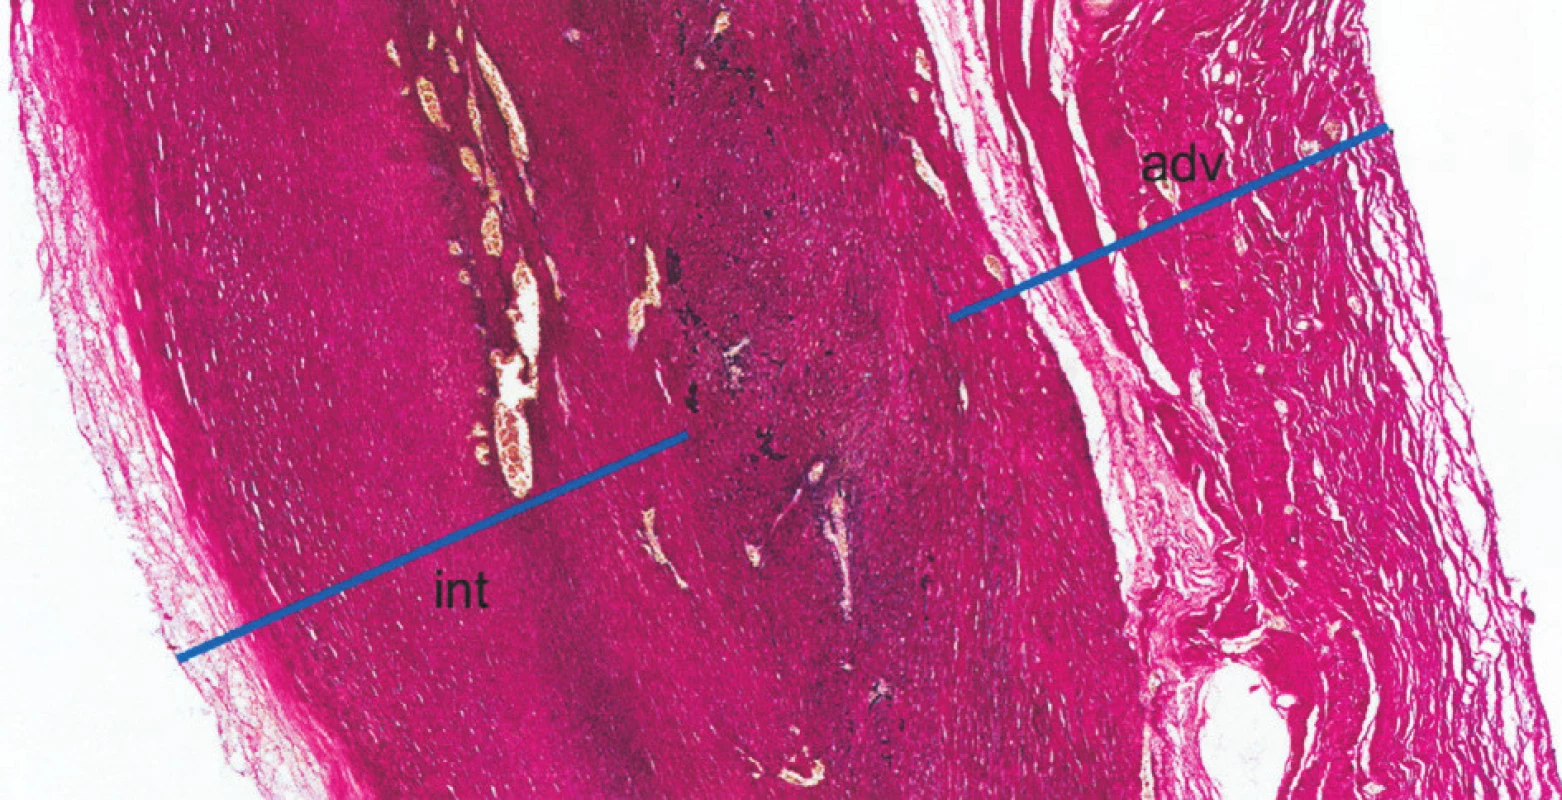 Histologie: Histotopogram resekované části stěny vzestupné aorty (barvení elastika – van Gieson). Stěna je výrazně ztluštělá, zejména fibrózním ztluštěním intimy (int) a adventicie (adv); mezi nimi je zjizvená, atrofická médie, s jen zbytky elastické složky (fragmenty černých hrubých vláken). Médie i intima jsou vaskularizované. Jde o obraz pozdního, jizevnatého stadia choroby, již bez nekróz a bez zánětlivých infiltrátů
Fig. 4. Histology: A histotopographic study of the resected part of the ascending aortic wall (elastic – van Gieson stain). The wall is significantly thickened, in particular due to fibrous intimal (int) and adventitial (adv) thickening; the inbetween media is scarred and atrophic, with remnants of the elastic component (fragments of black coarse fibres). The media and intima layers are vascularized. The above is a picture of late, scarring disease stage, already without necroses and inflammatory infiltrations